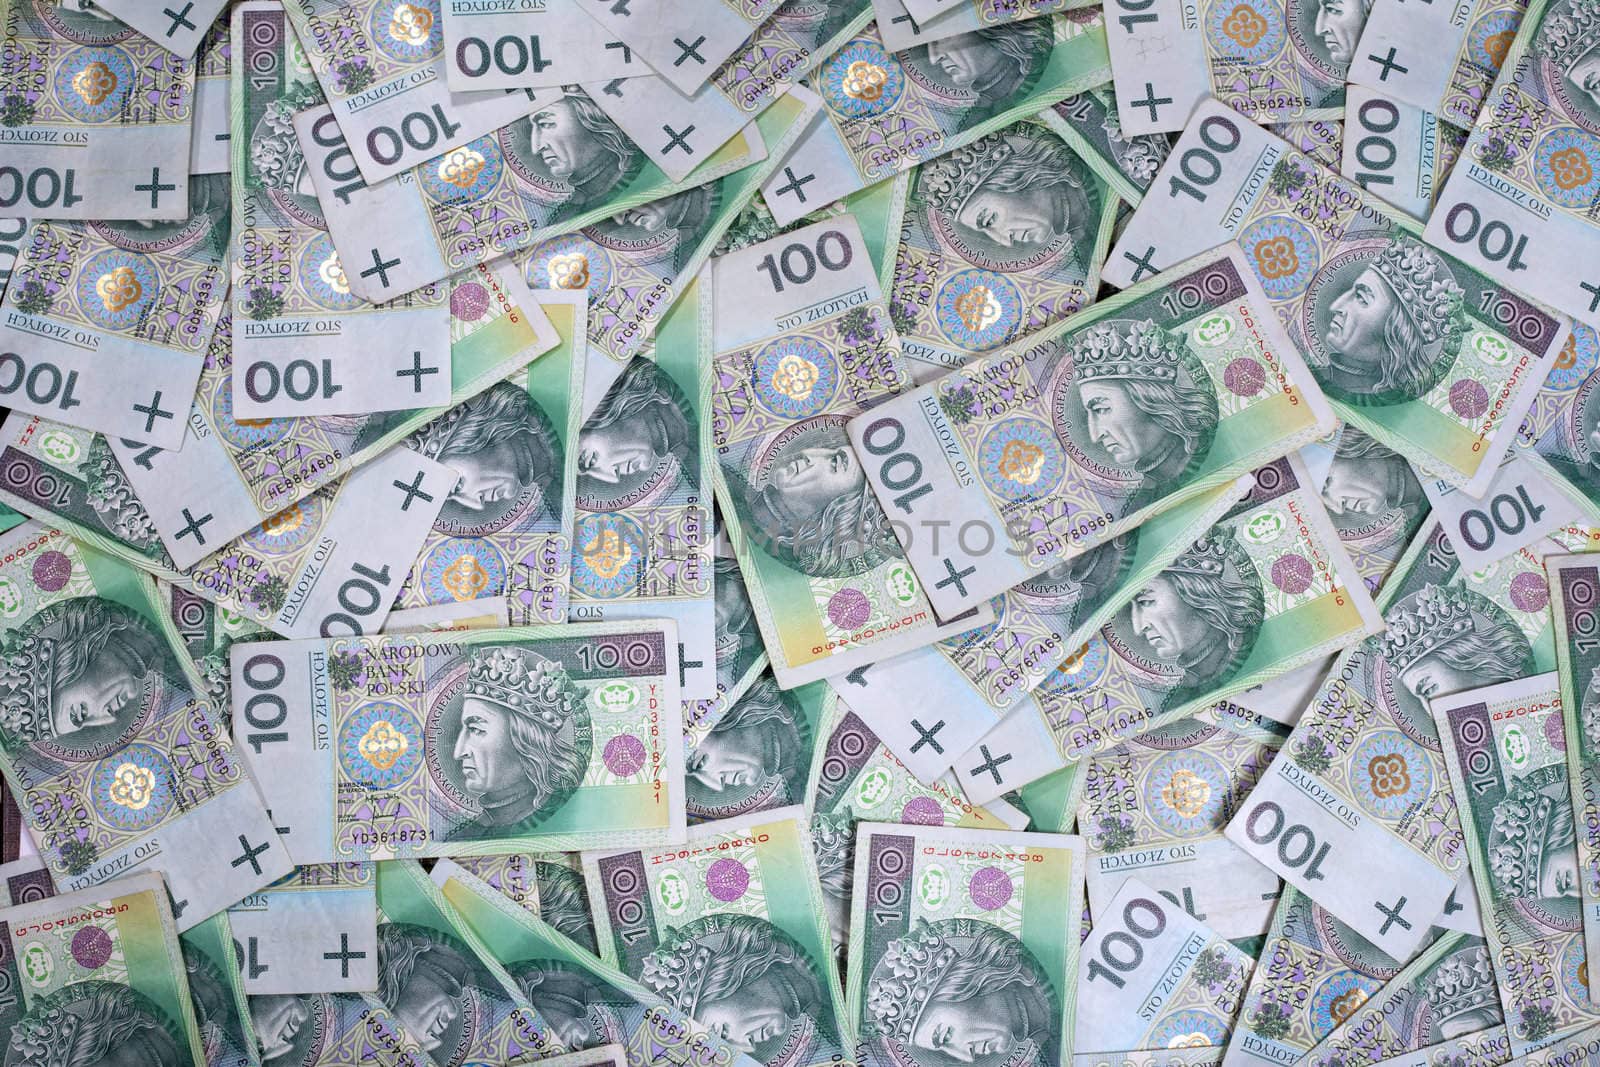 Polish 100 zloty banknotes
